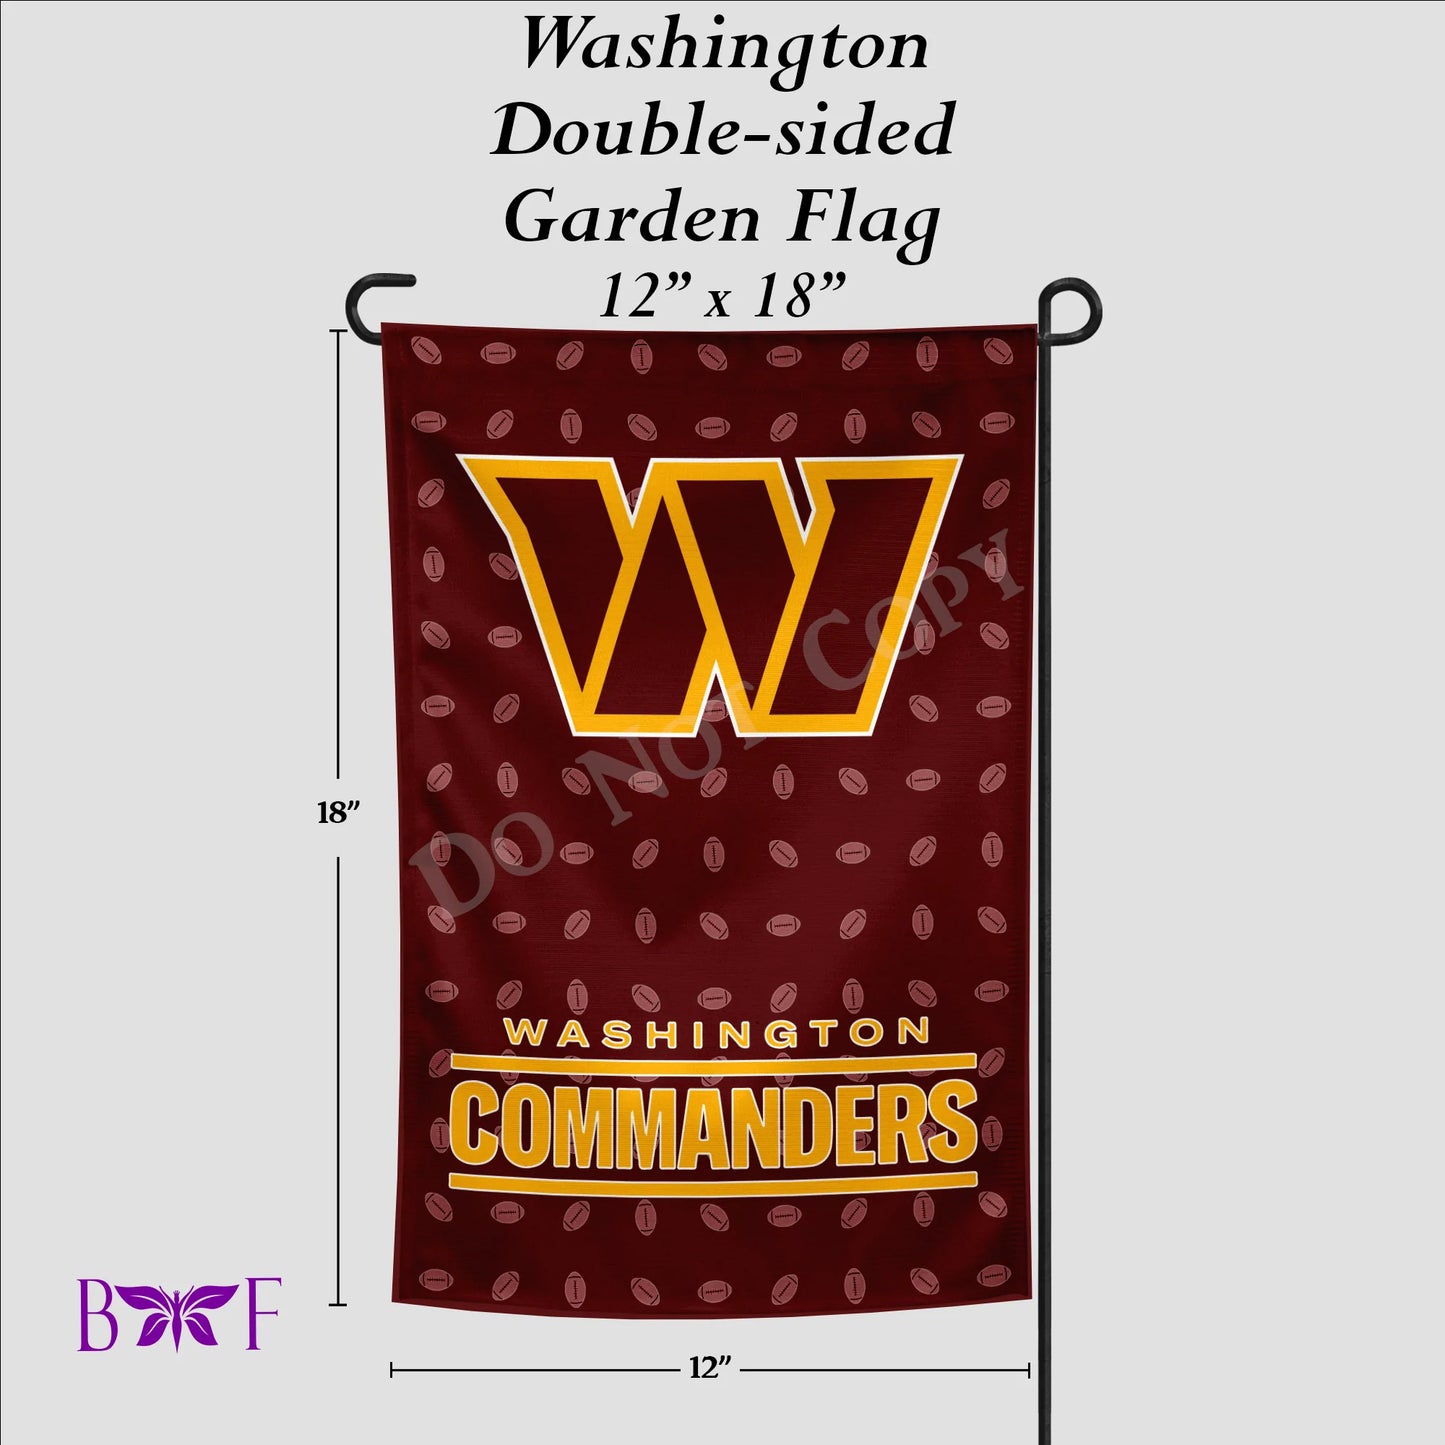 Washington Garden Flag